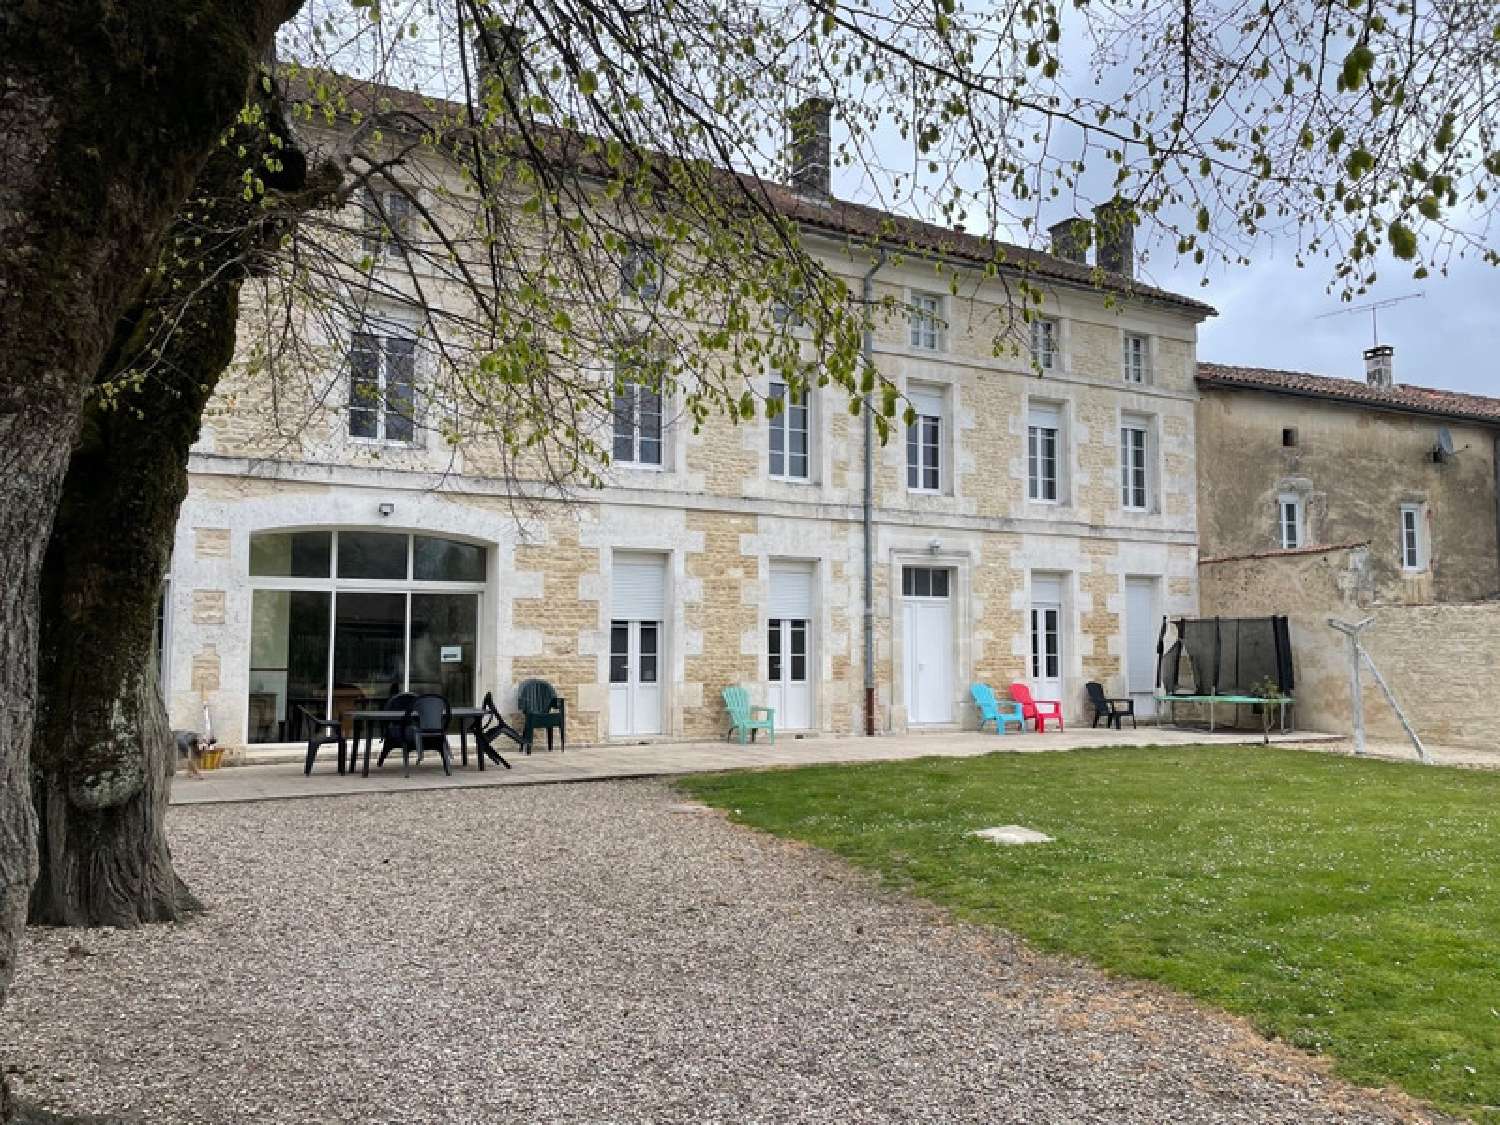  à vendre maison bourgeoise Saint-Cybardeaux Charente 1